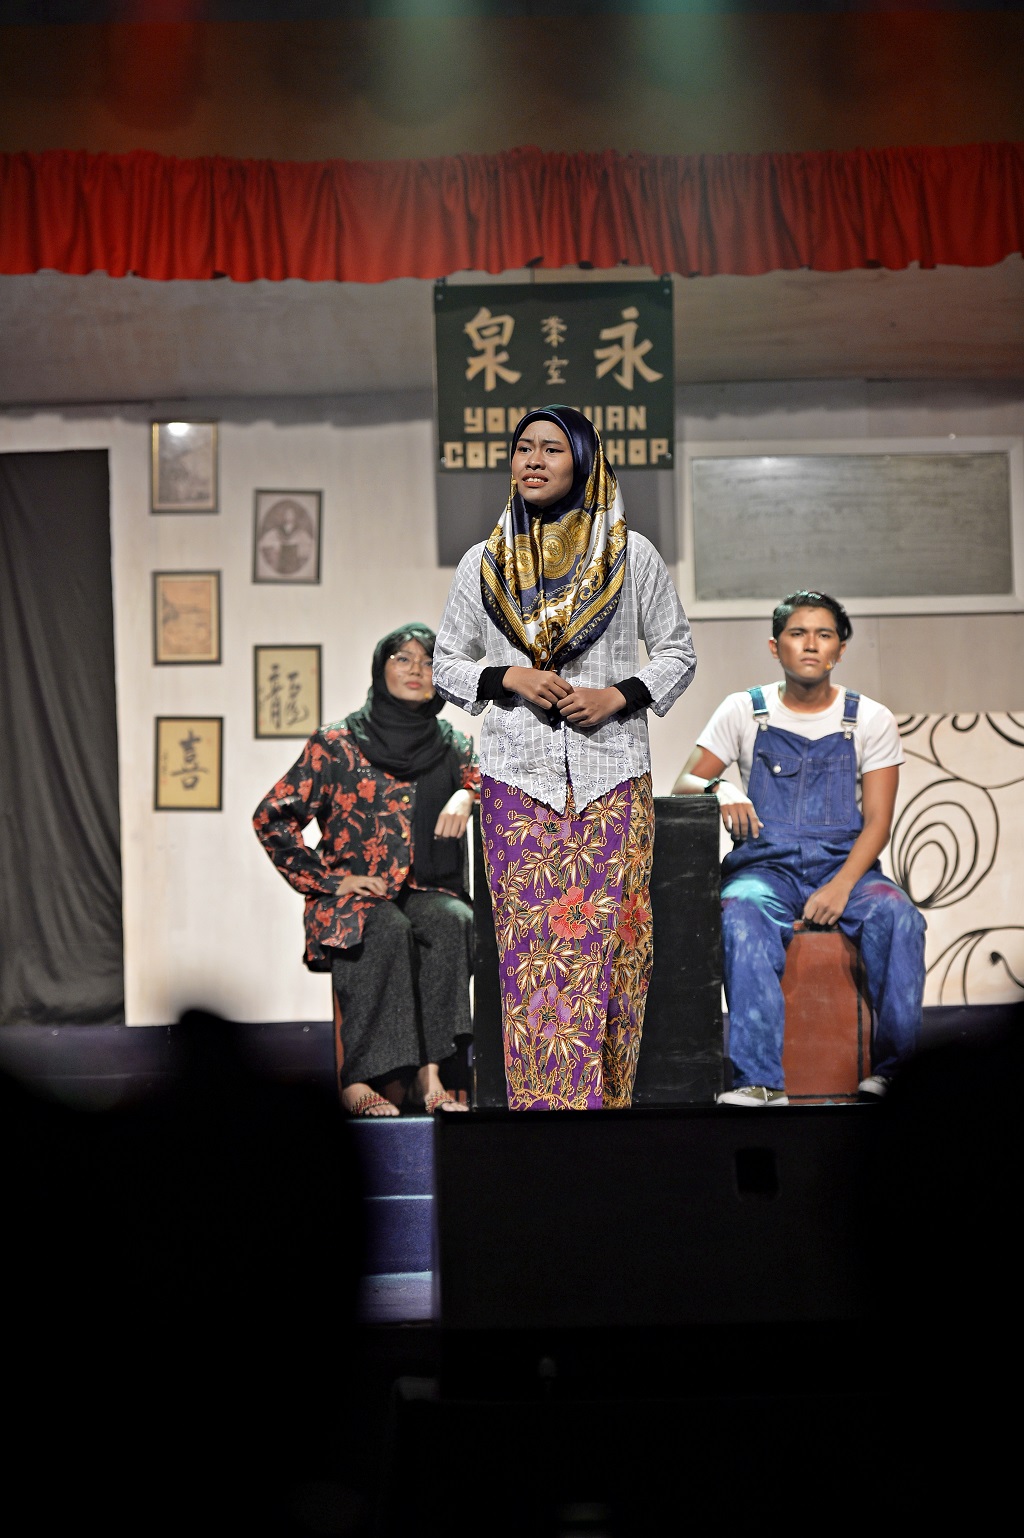 Mahasiswa UMP Berbakat Besar Pementasan Teater Jalan Yang Kalsom Pikat Hati Penonton